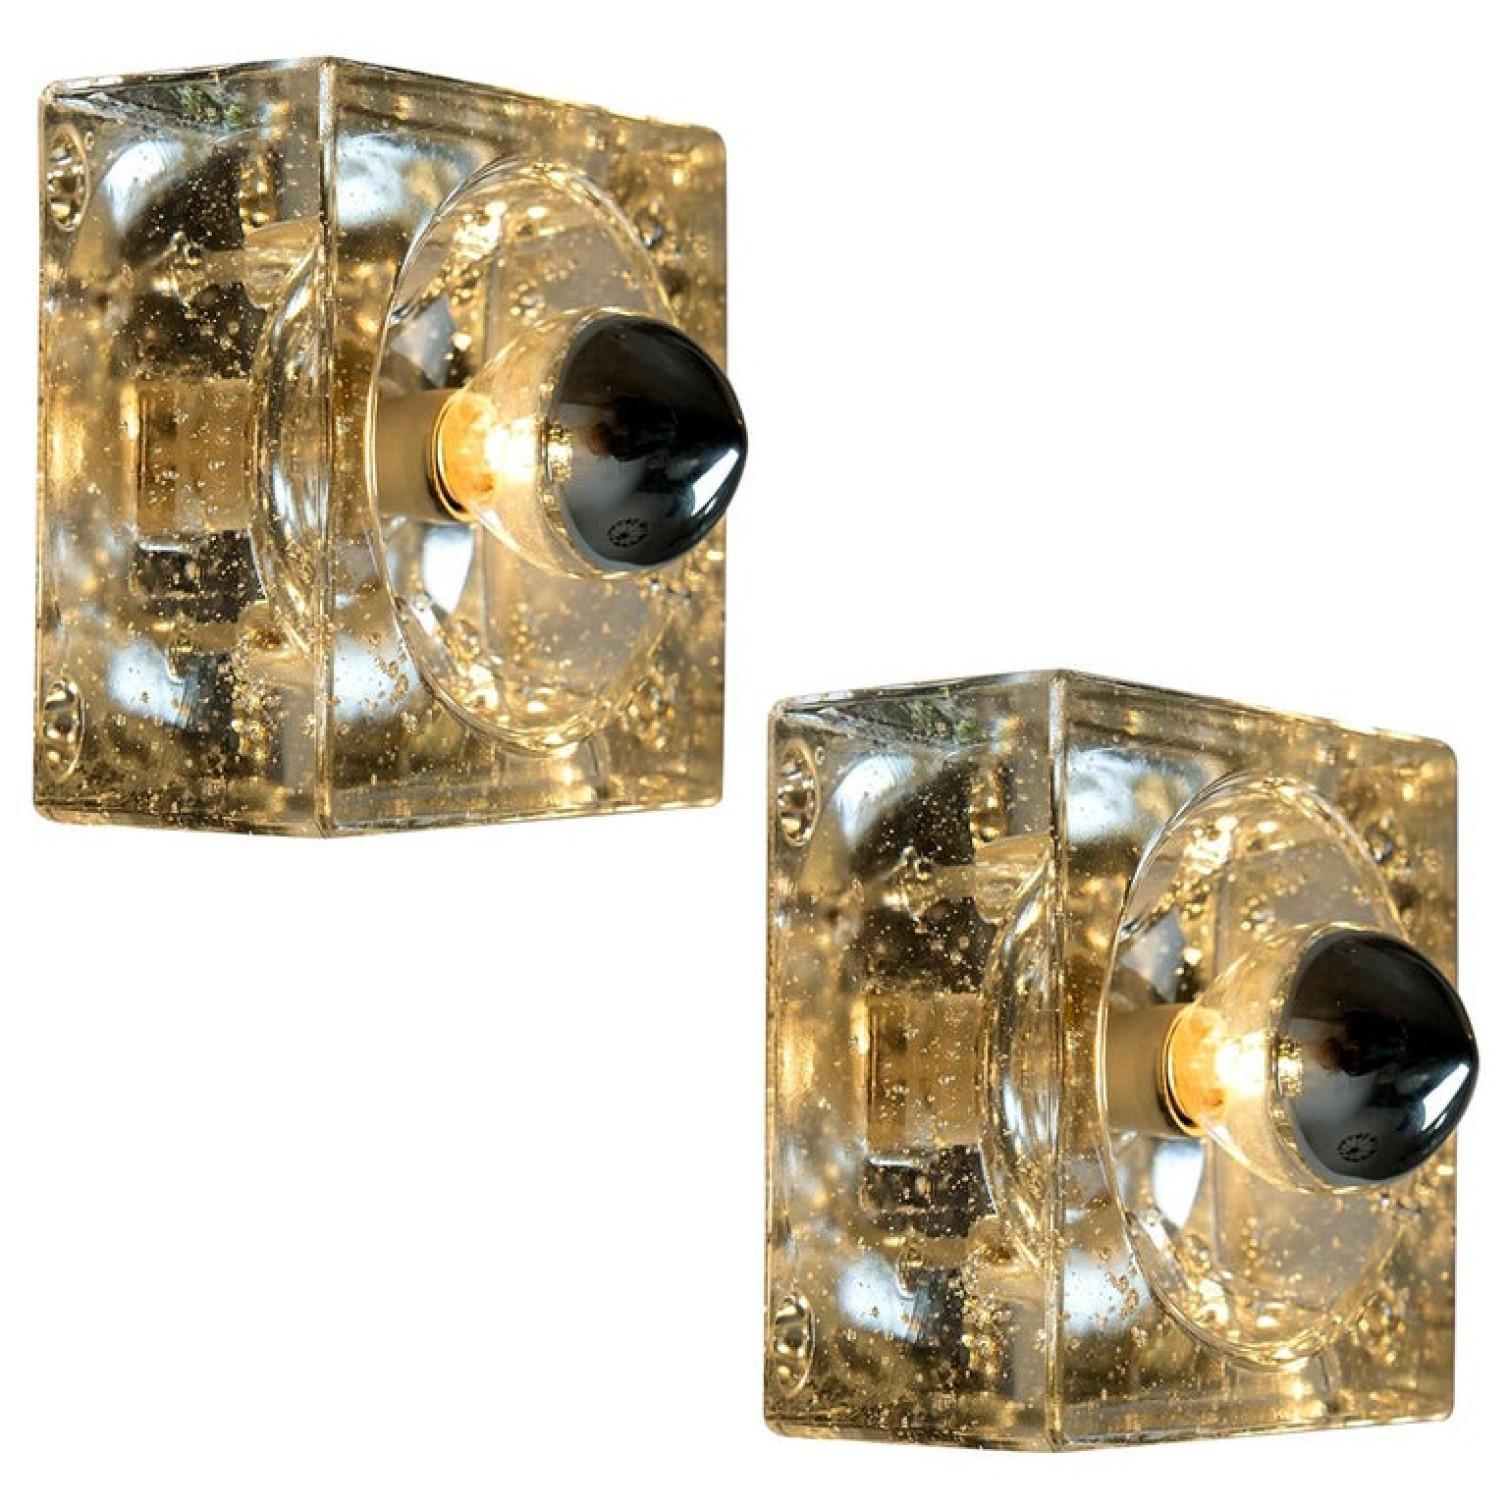 Diese Leuchten sind aus dickem mundgeblasenem Glas auf einer quadratischen silberfarbenen Rückwand gefertigt. Das Glas erzeugt einen schönen Lichteffekt an der Decke, auf dem Tisch oder an der Wand. Jede Lampe hat eine E14-Fassung (max. 25